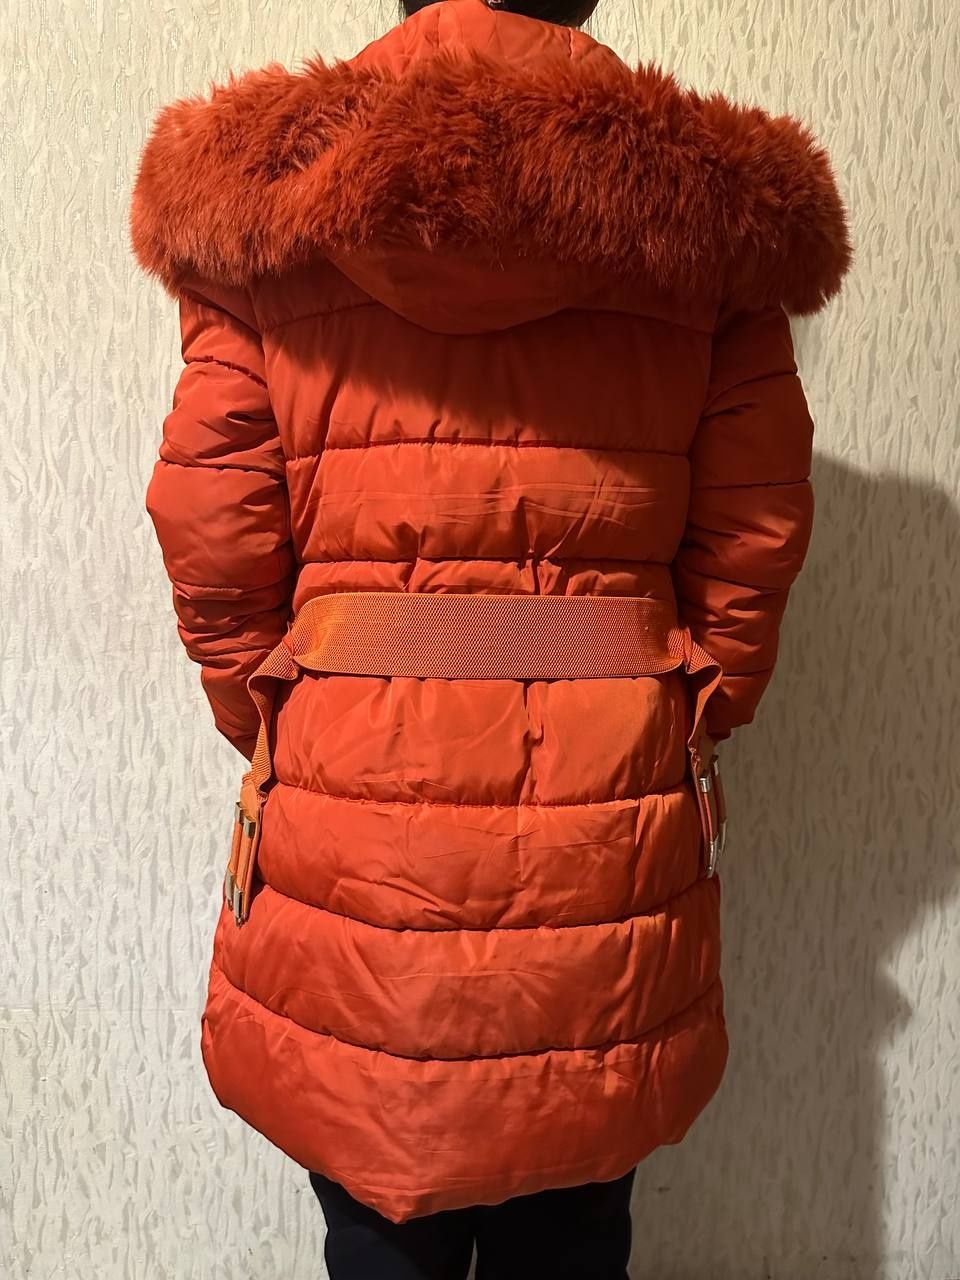 Пальто куртка зимнее подростковое  на 170 см